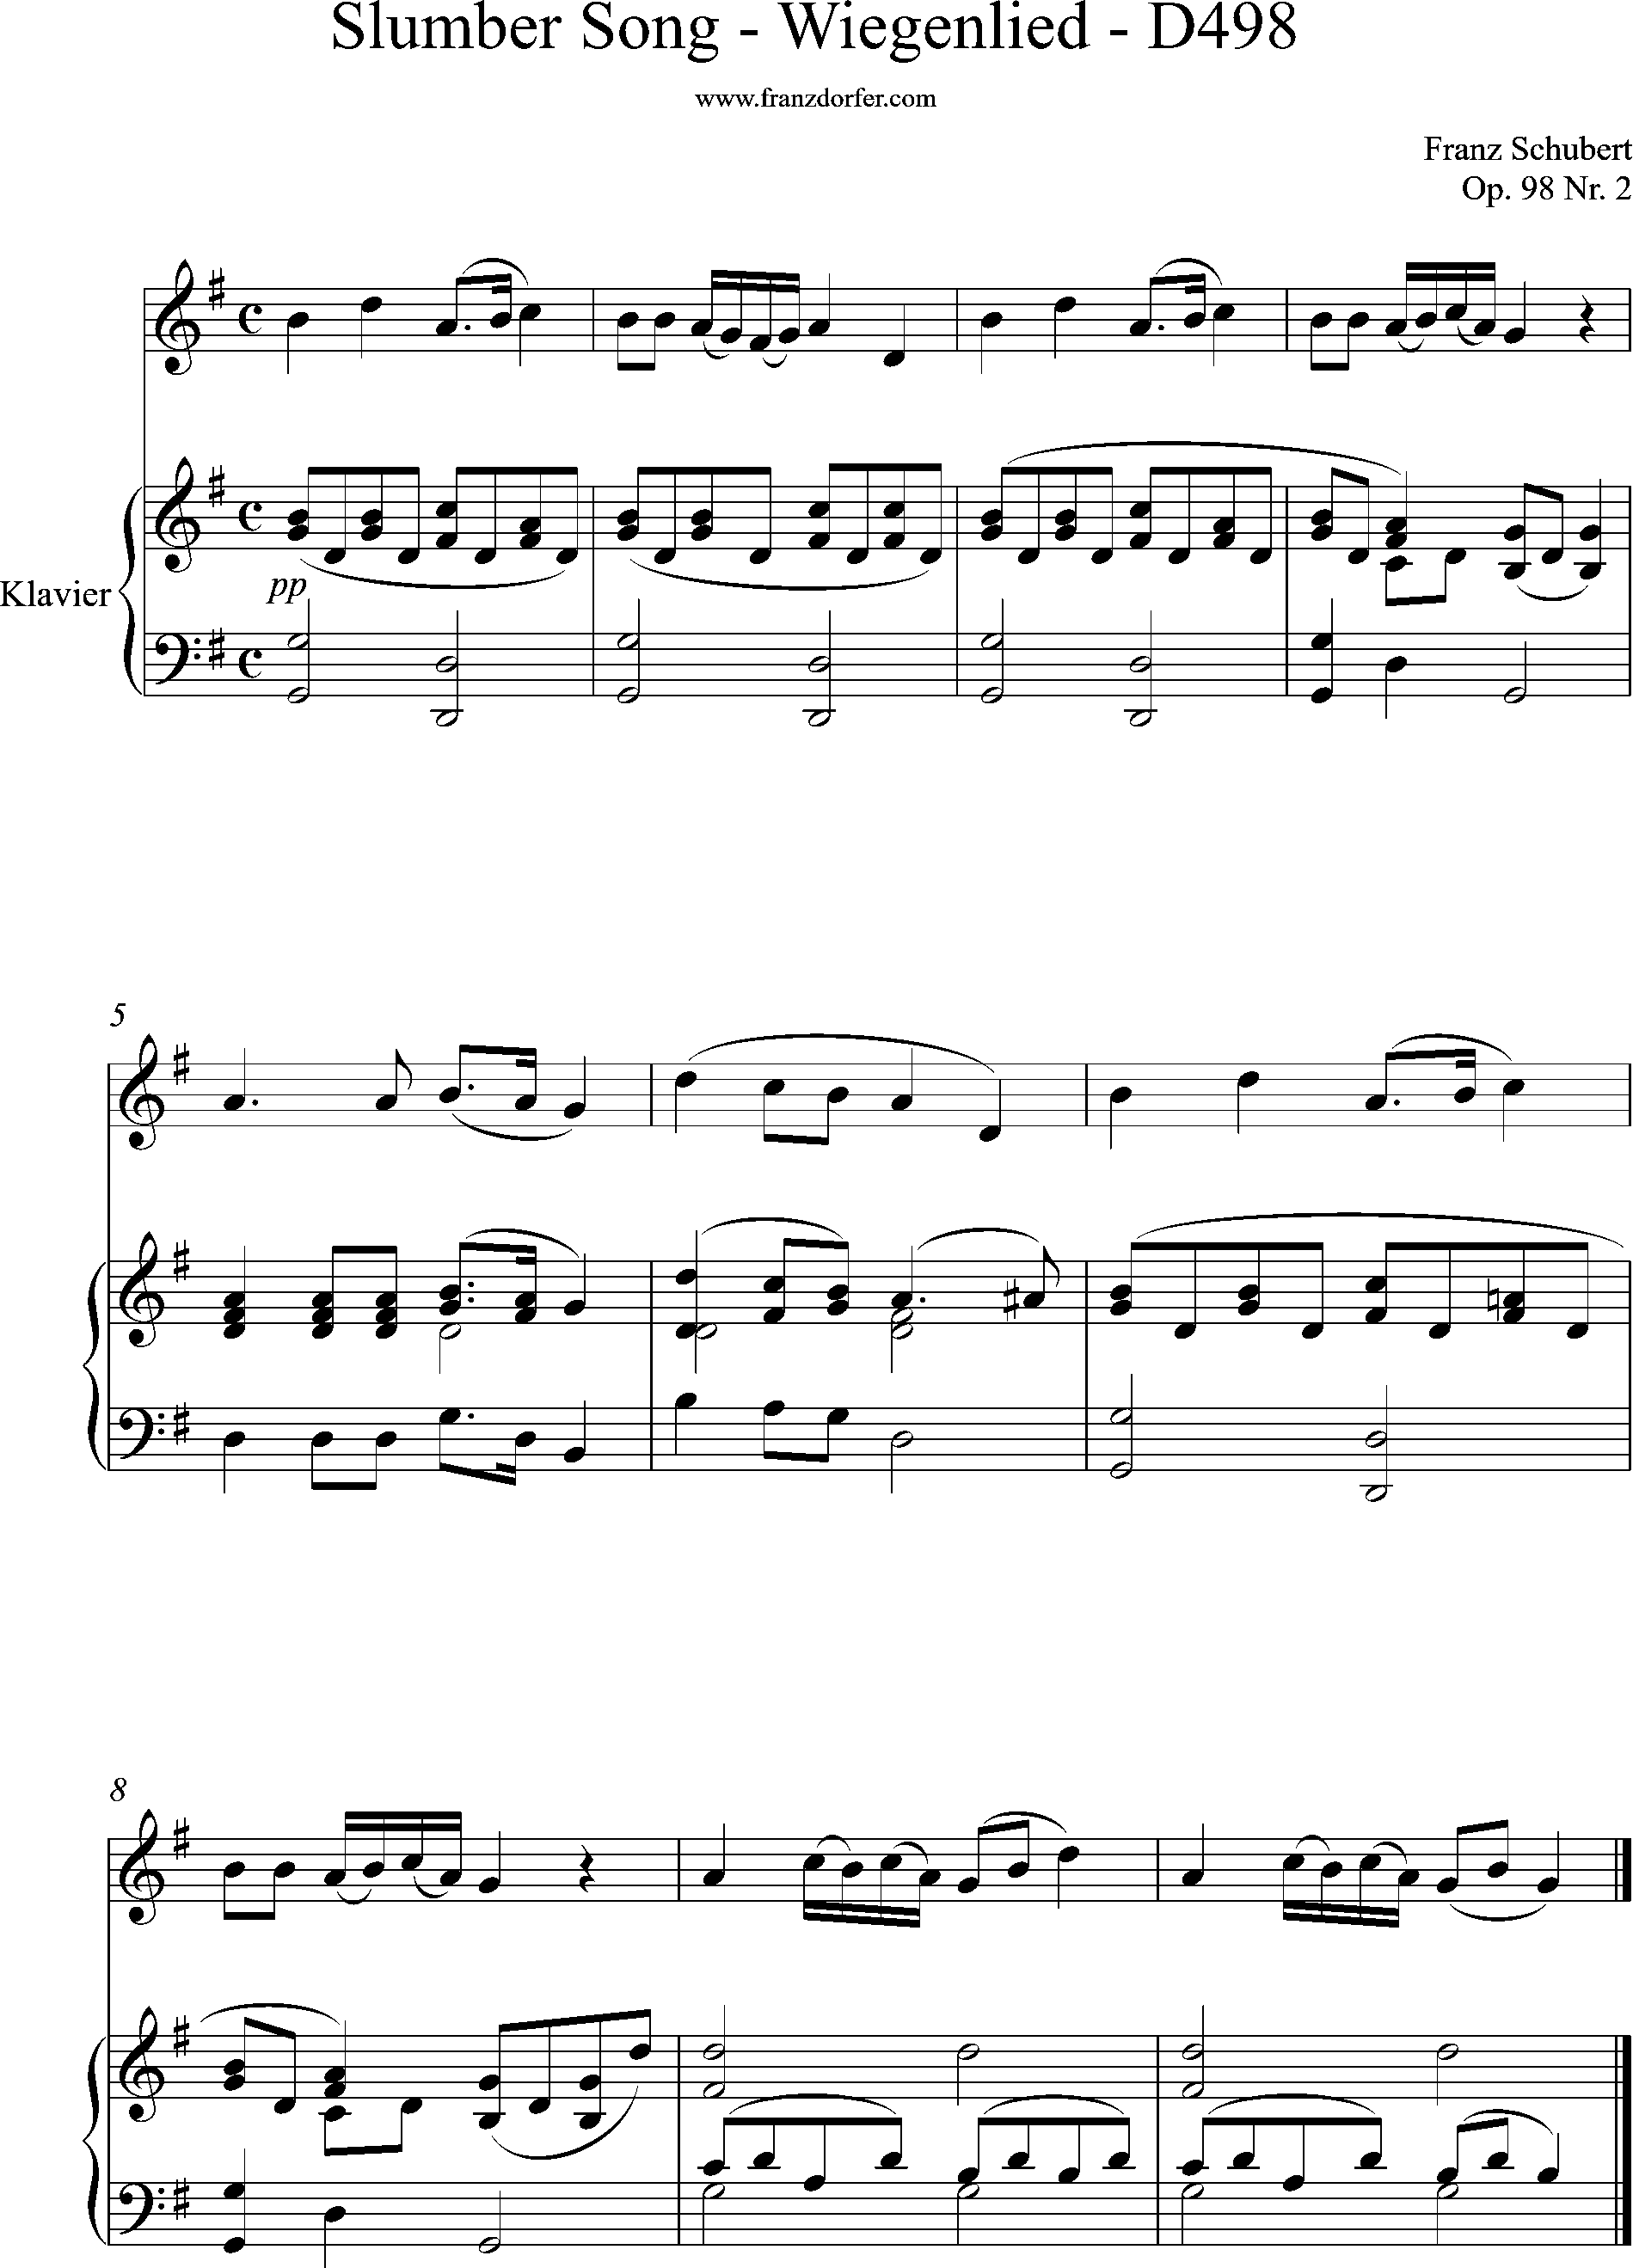 Wiegenlied, D498, Schubert, G-Dur